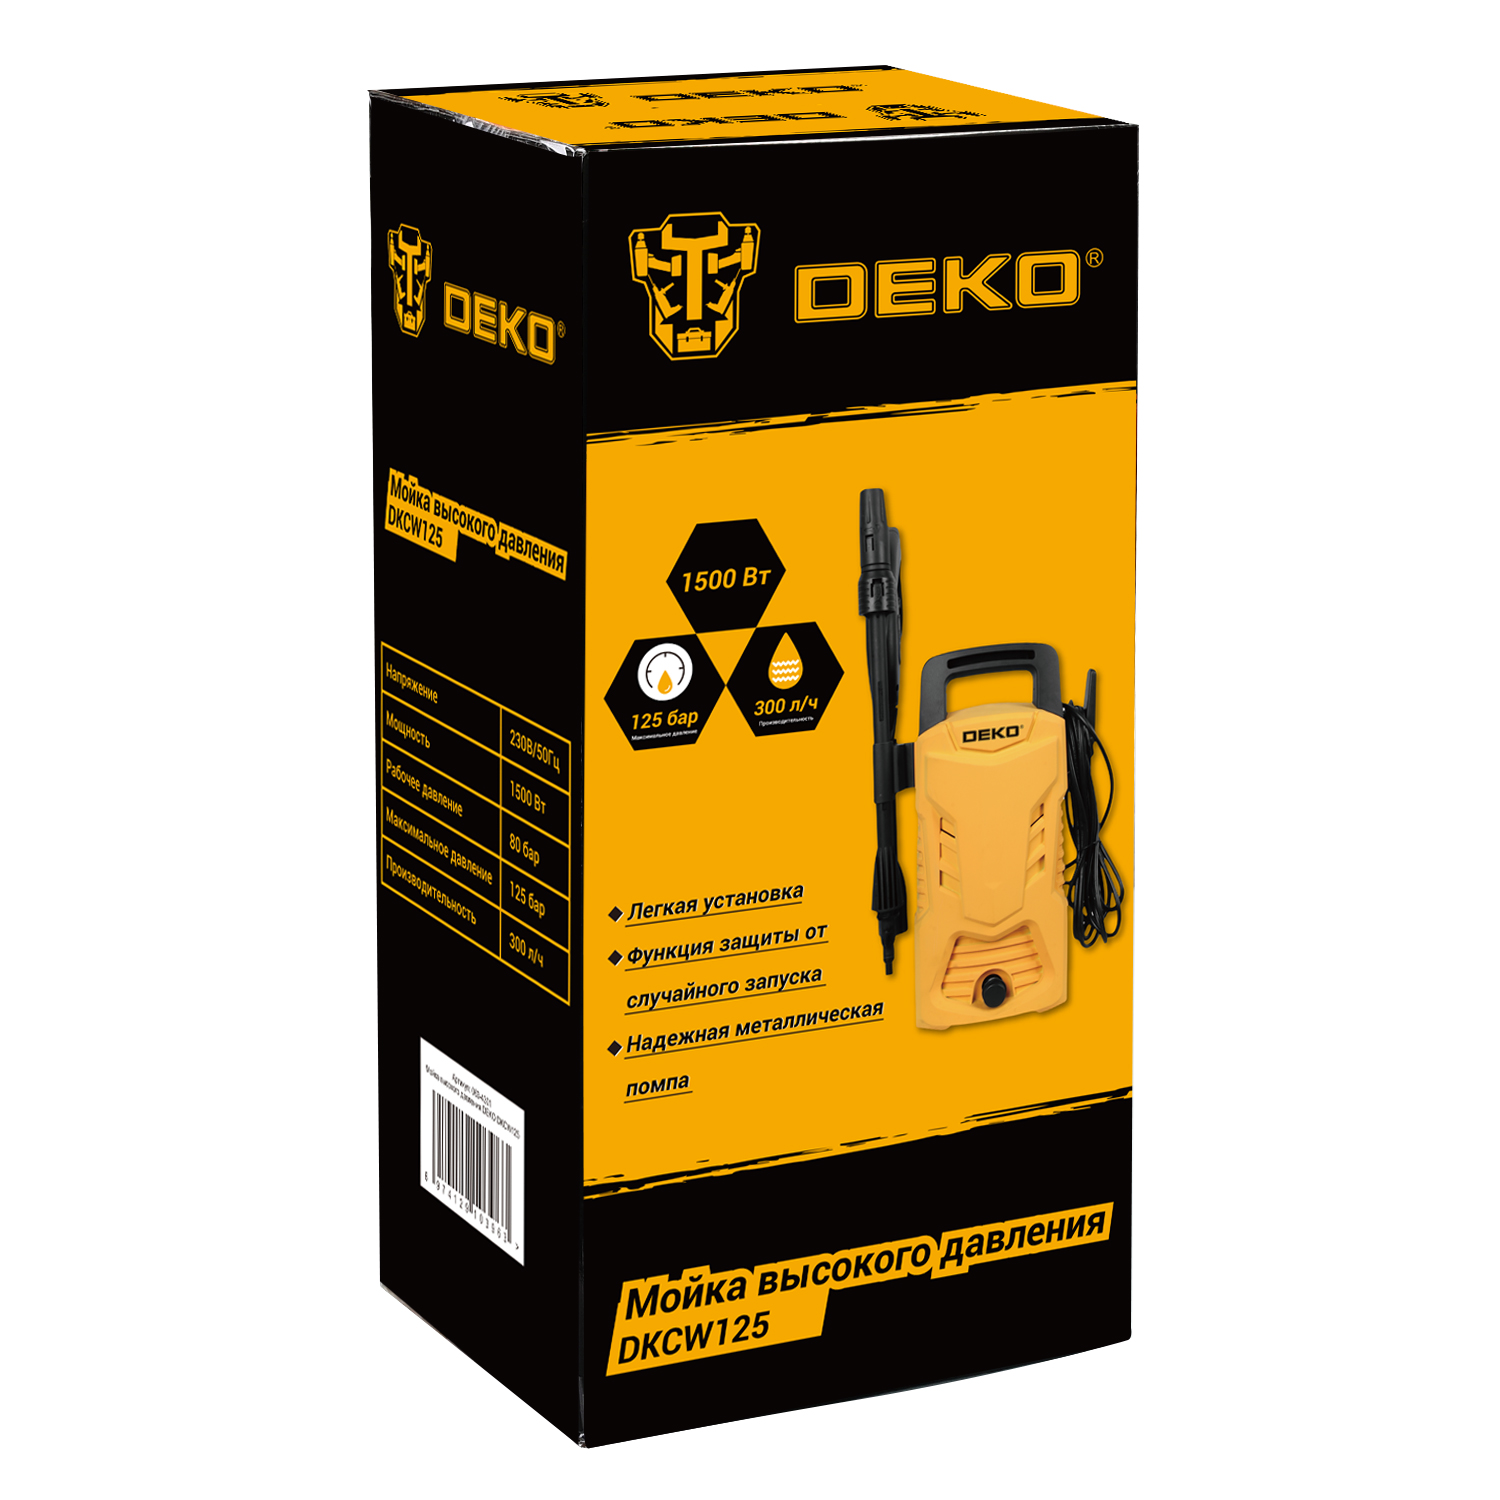 Электрическая мойка высокого давления DEKO DKCW125 063-4301 1500 Вт .